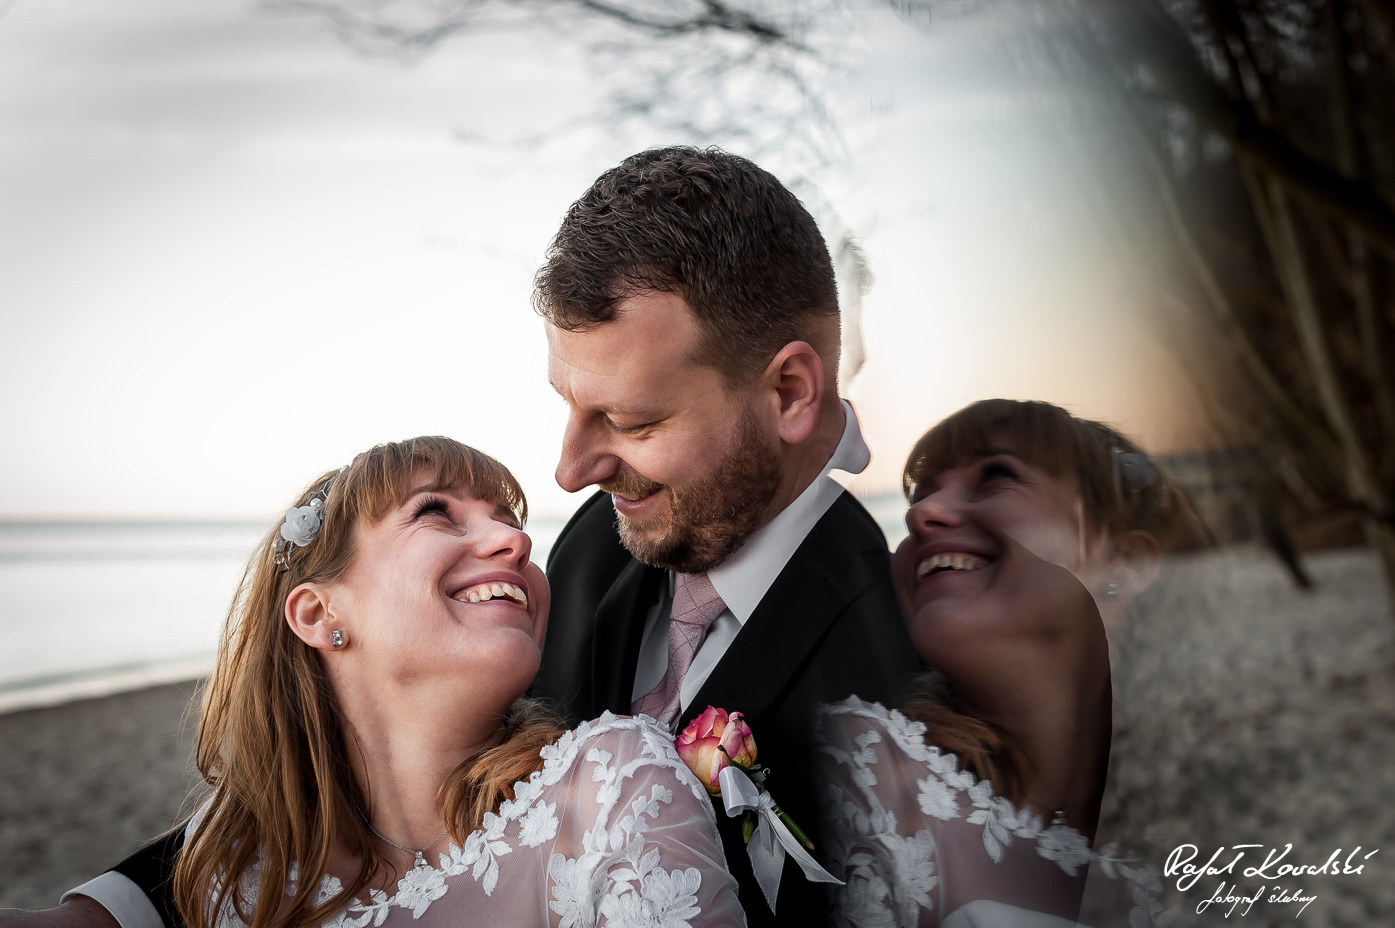 Zdjęcia Ślubne Gdynia efektowne odbicie sprawia wrażenie jak były dwie panny młode na zdjęciu z pleneru ślubnego